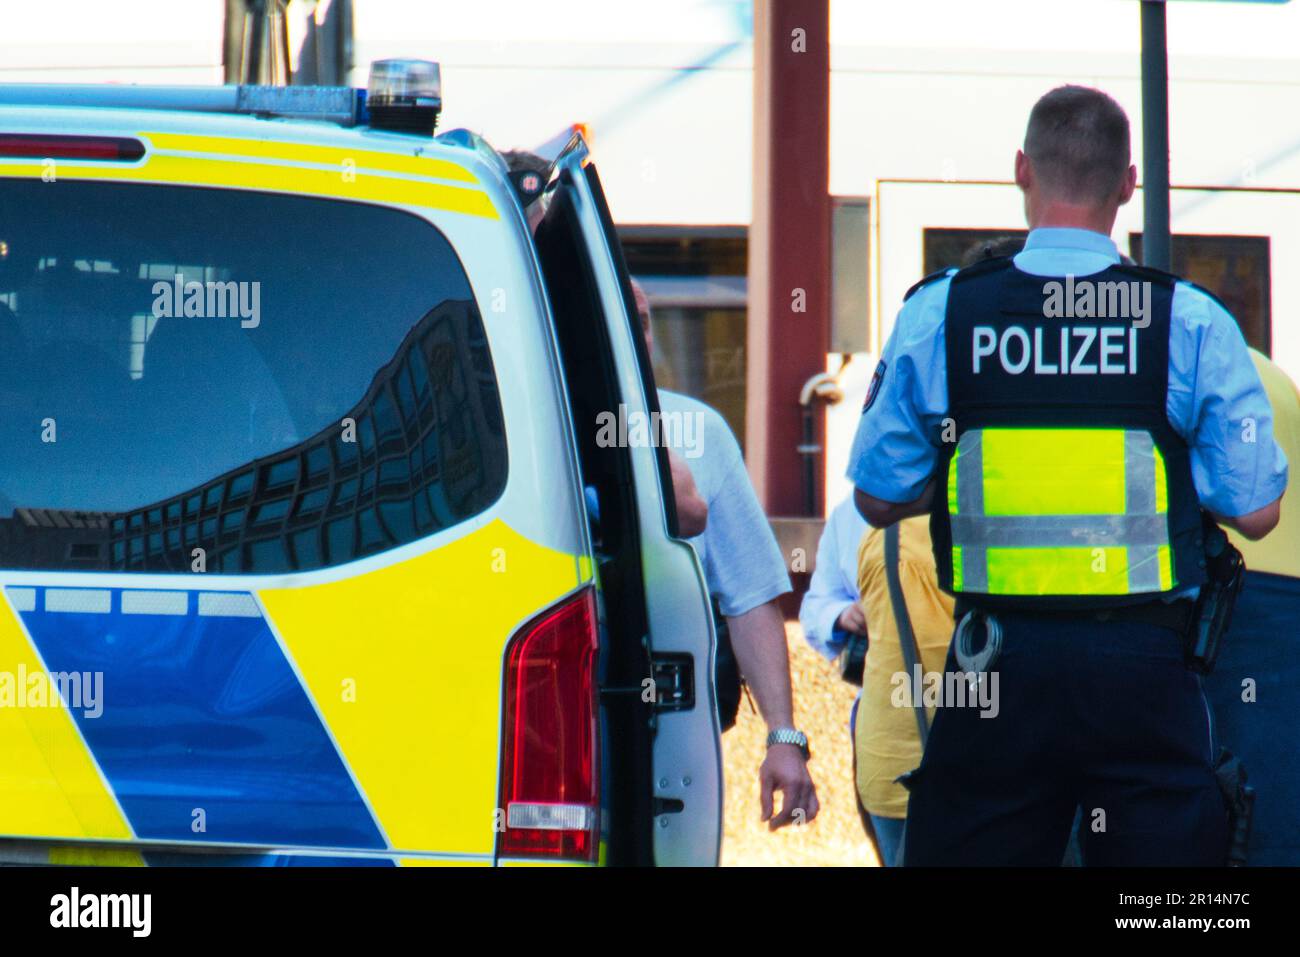 Policeman next to a police car when checking a person Stock Photo